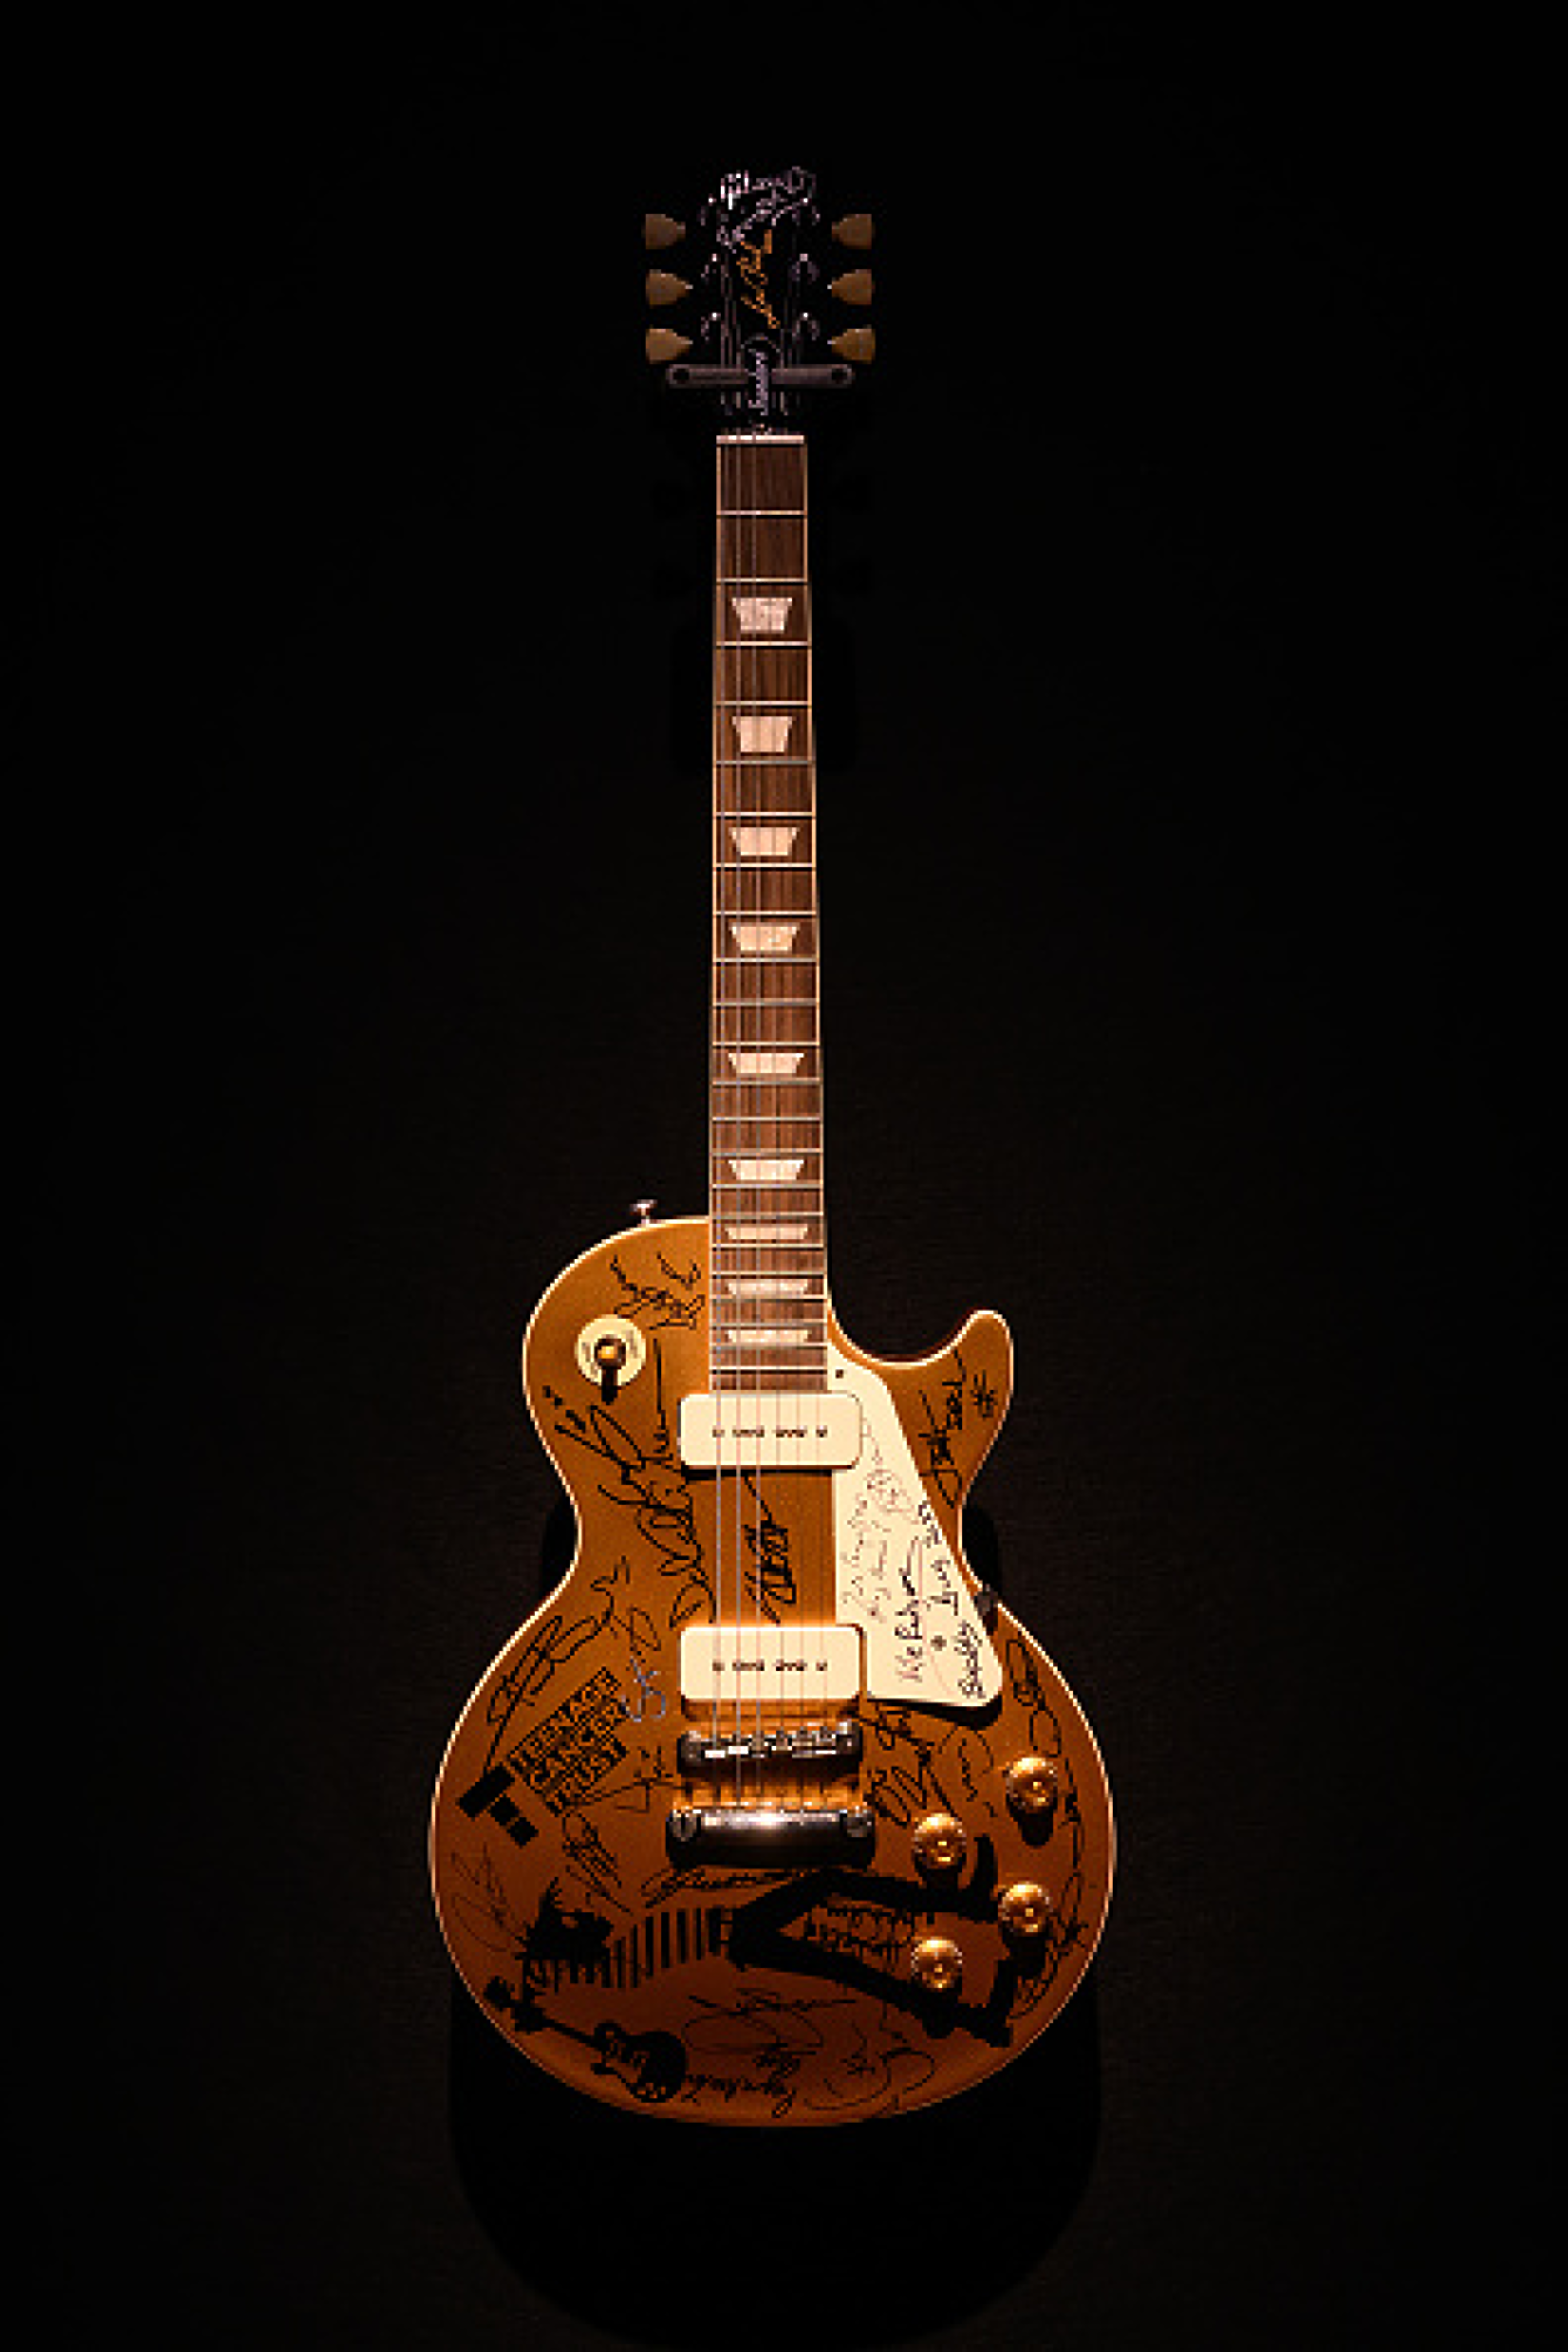 Eлектрическа соло китара Gibson Les Paul Standard "Gold Top" с автографи от Ерик Клептън, Дейвид Гилмор и Джеф Бек с първоначална оценка 20 000-40 000 паунда. Снимка: Getty Images